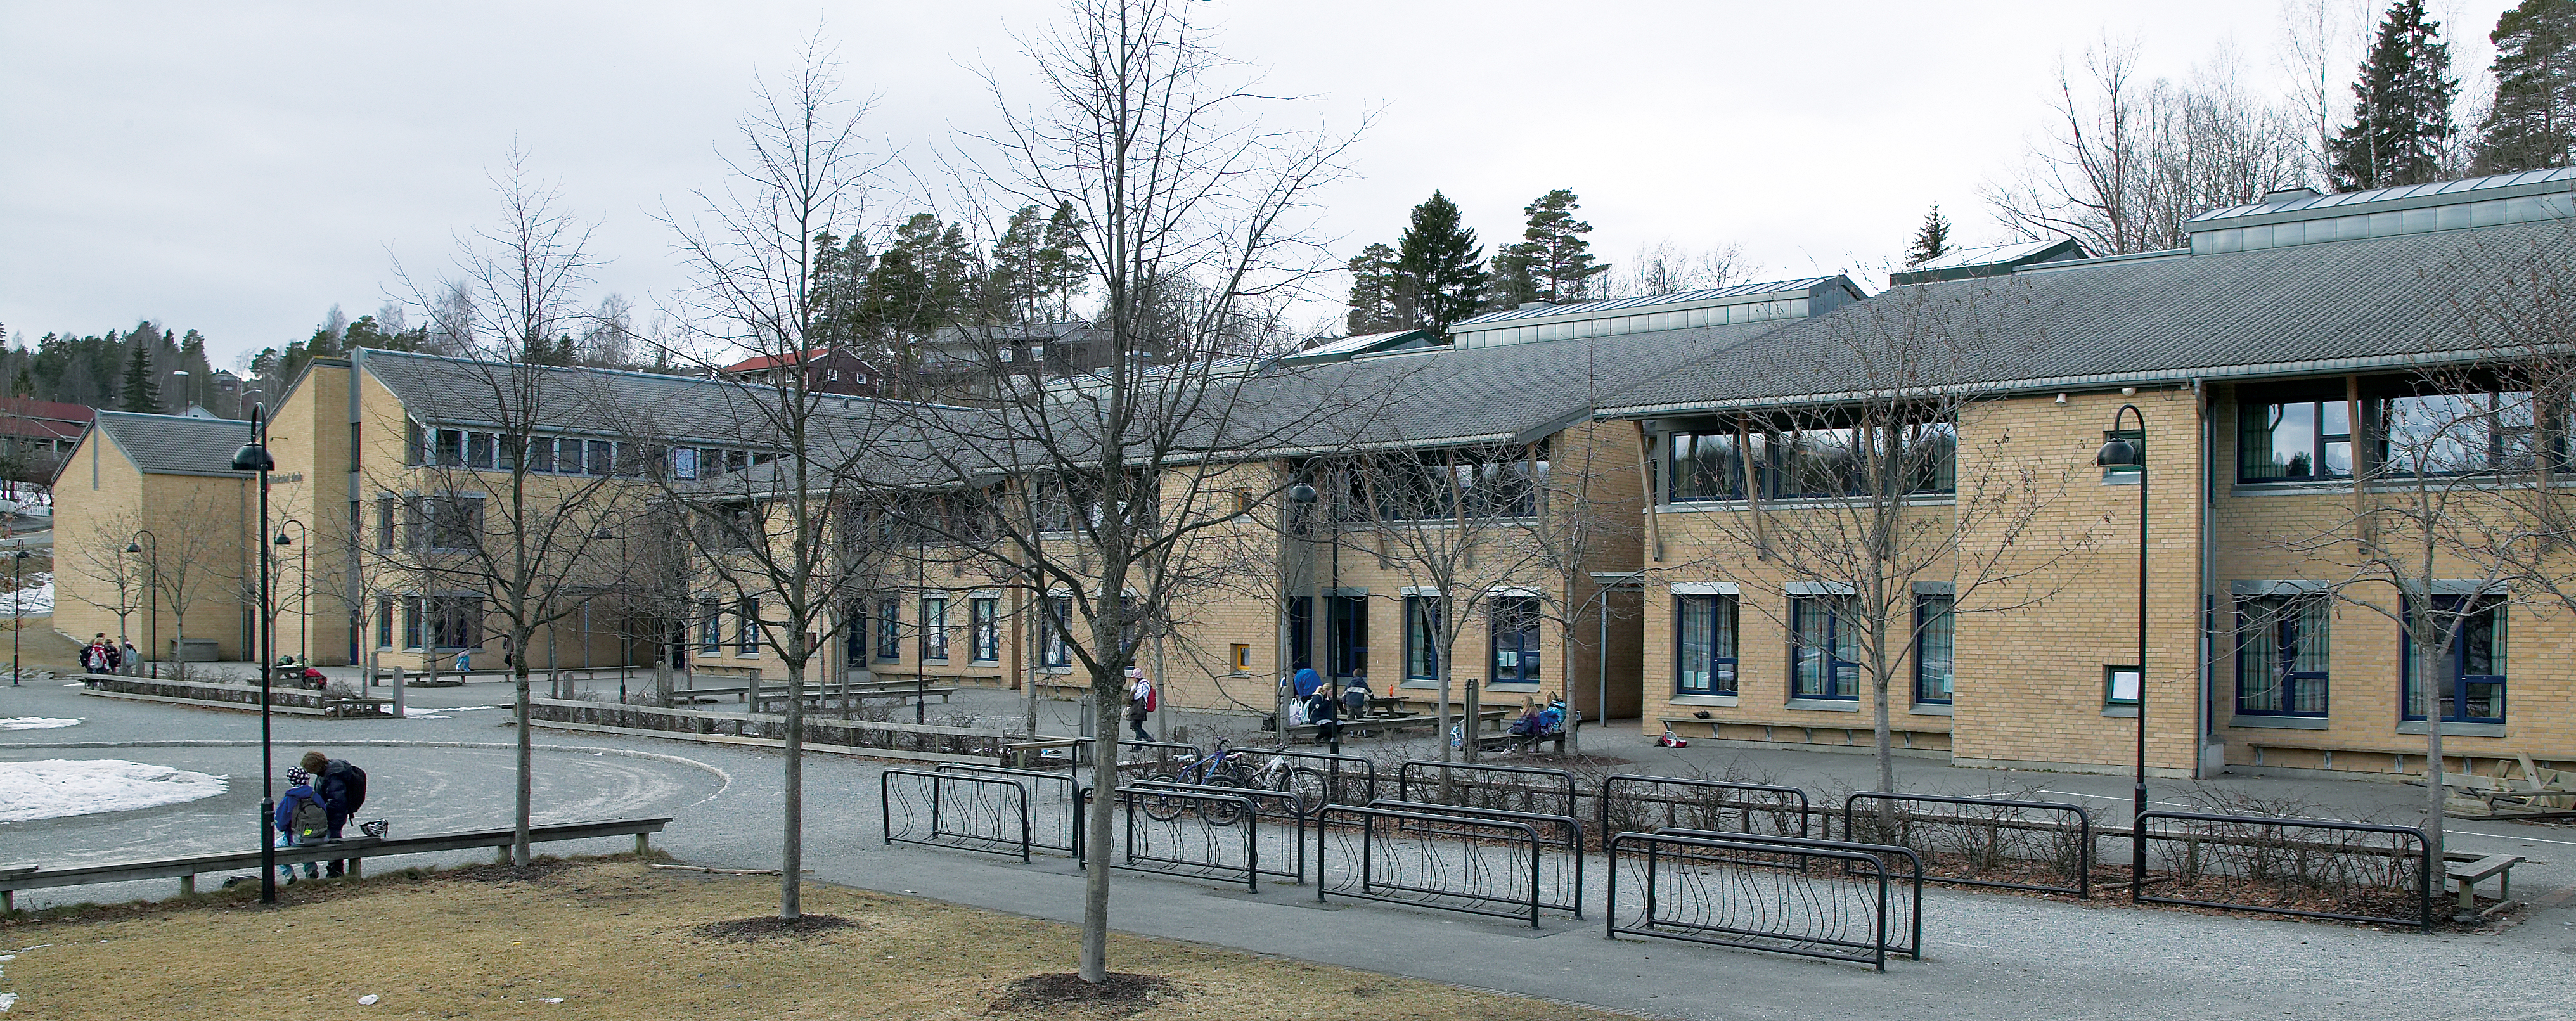 Blakstad skole Asker, Norge